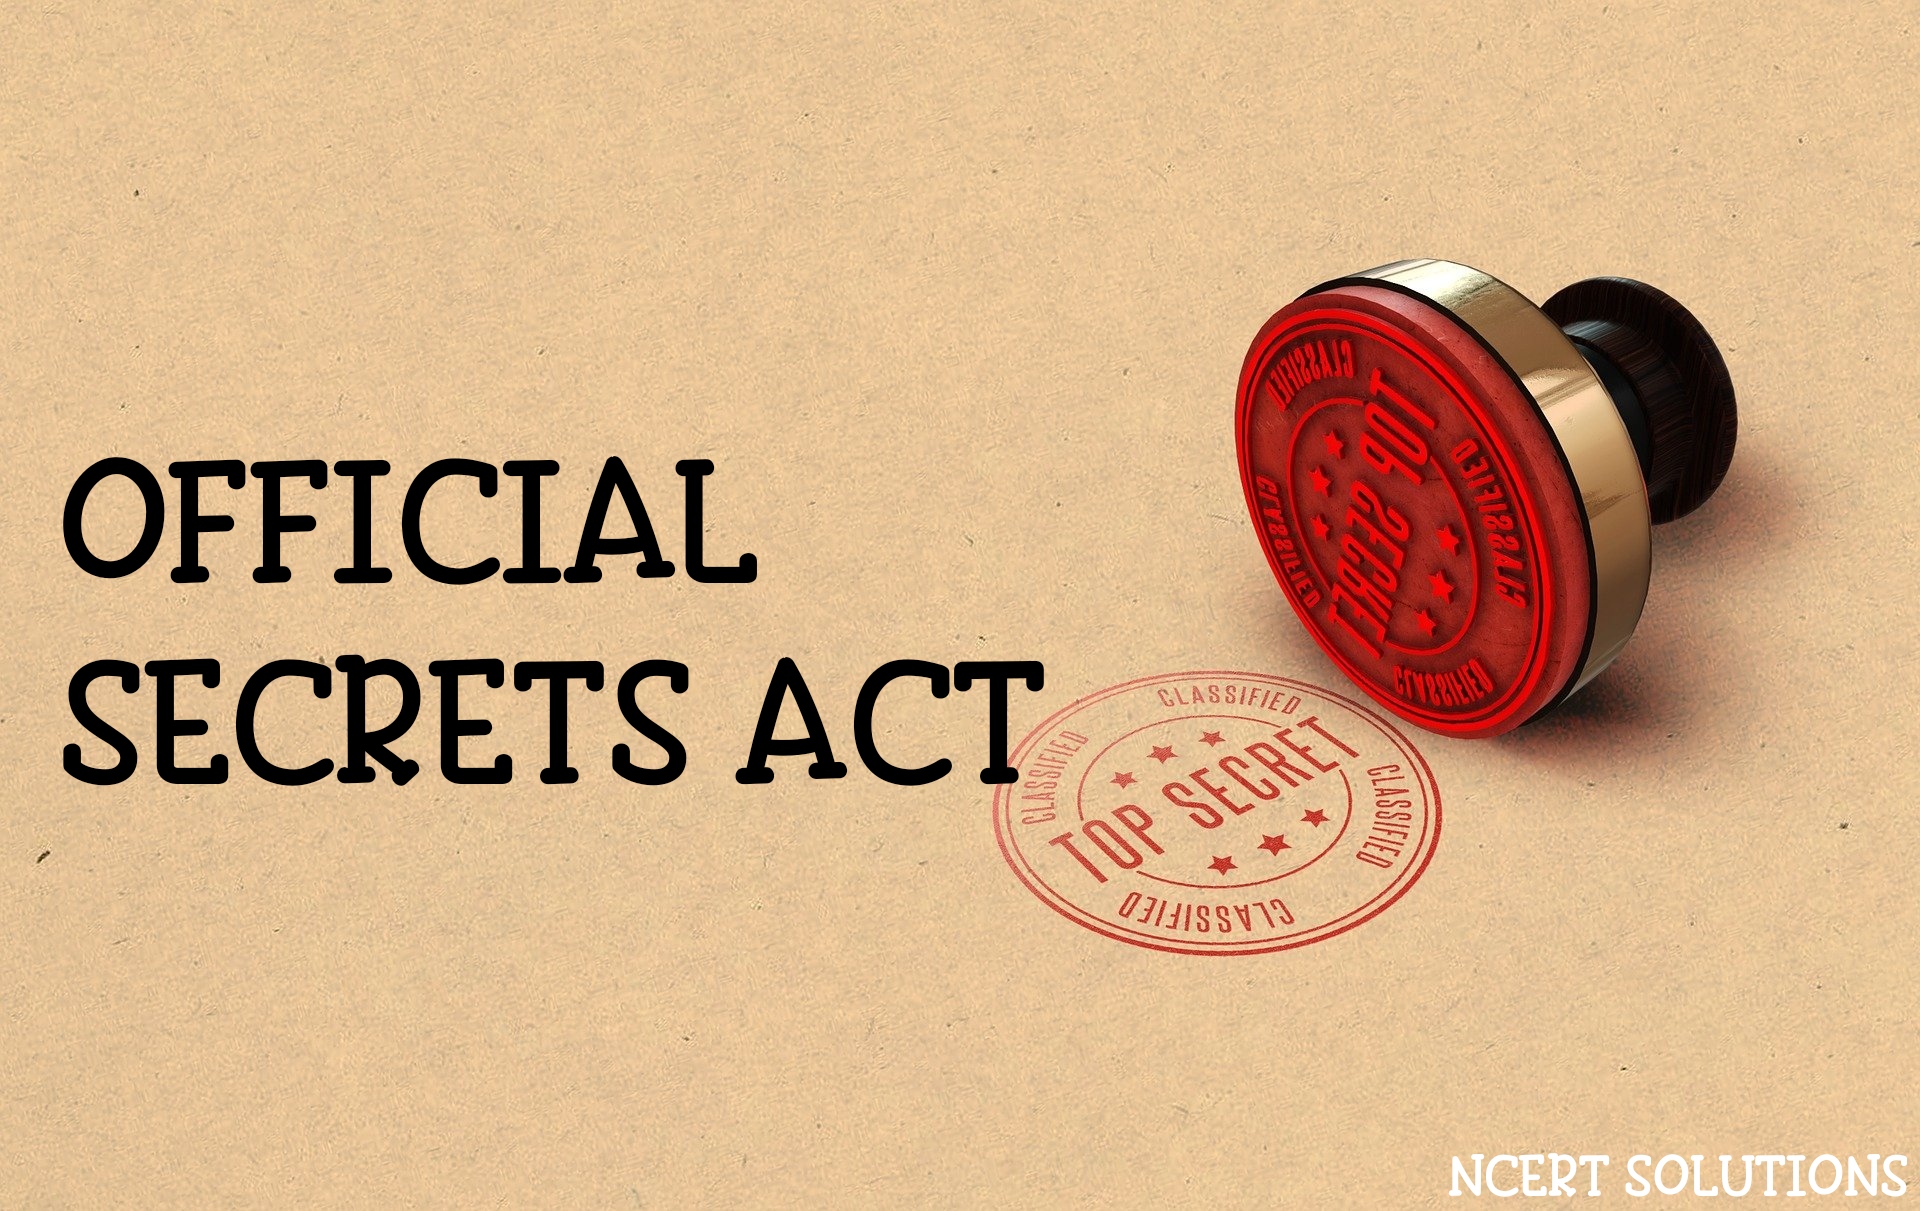 OFFICIAL SECRETS ACT